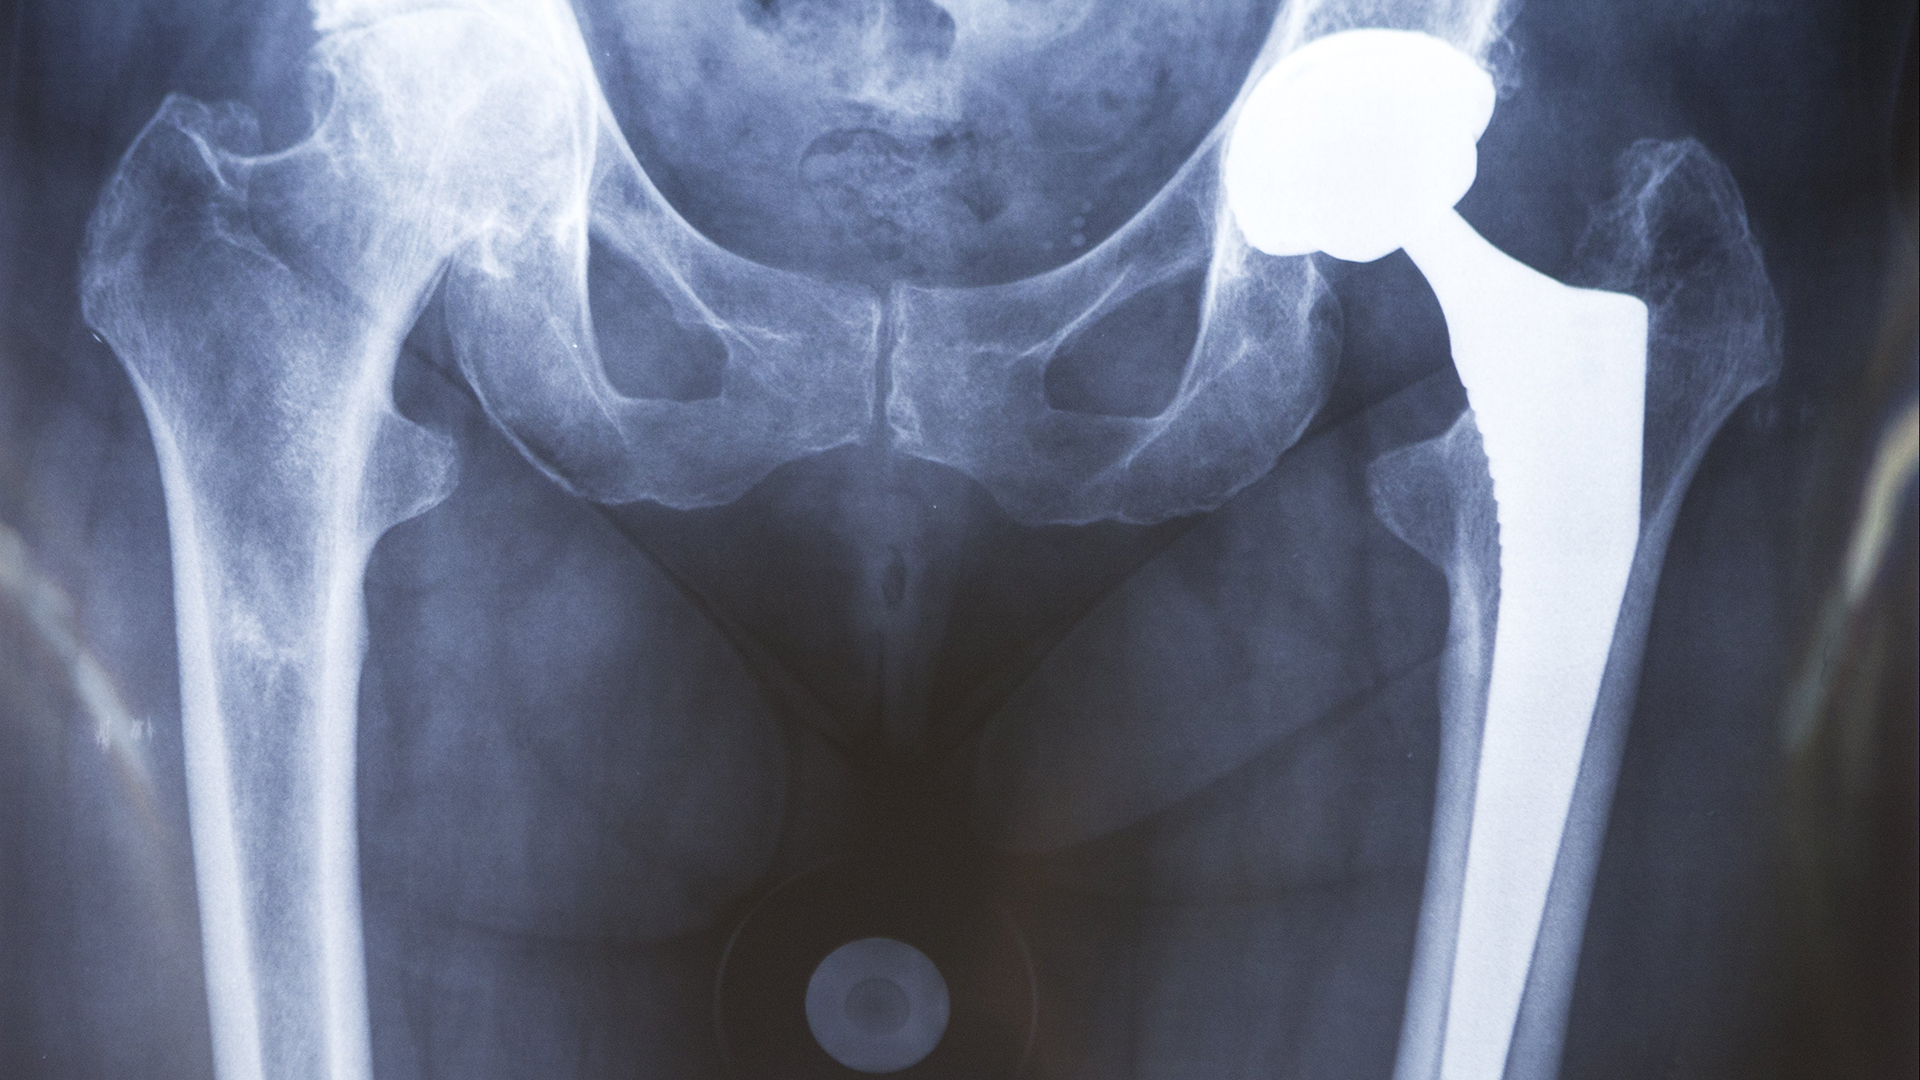 Hidden dangers: patients, doctors not informed of defective implants